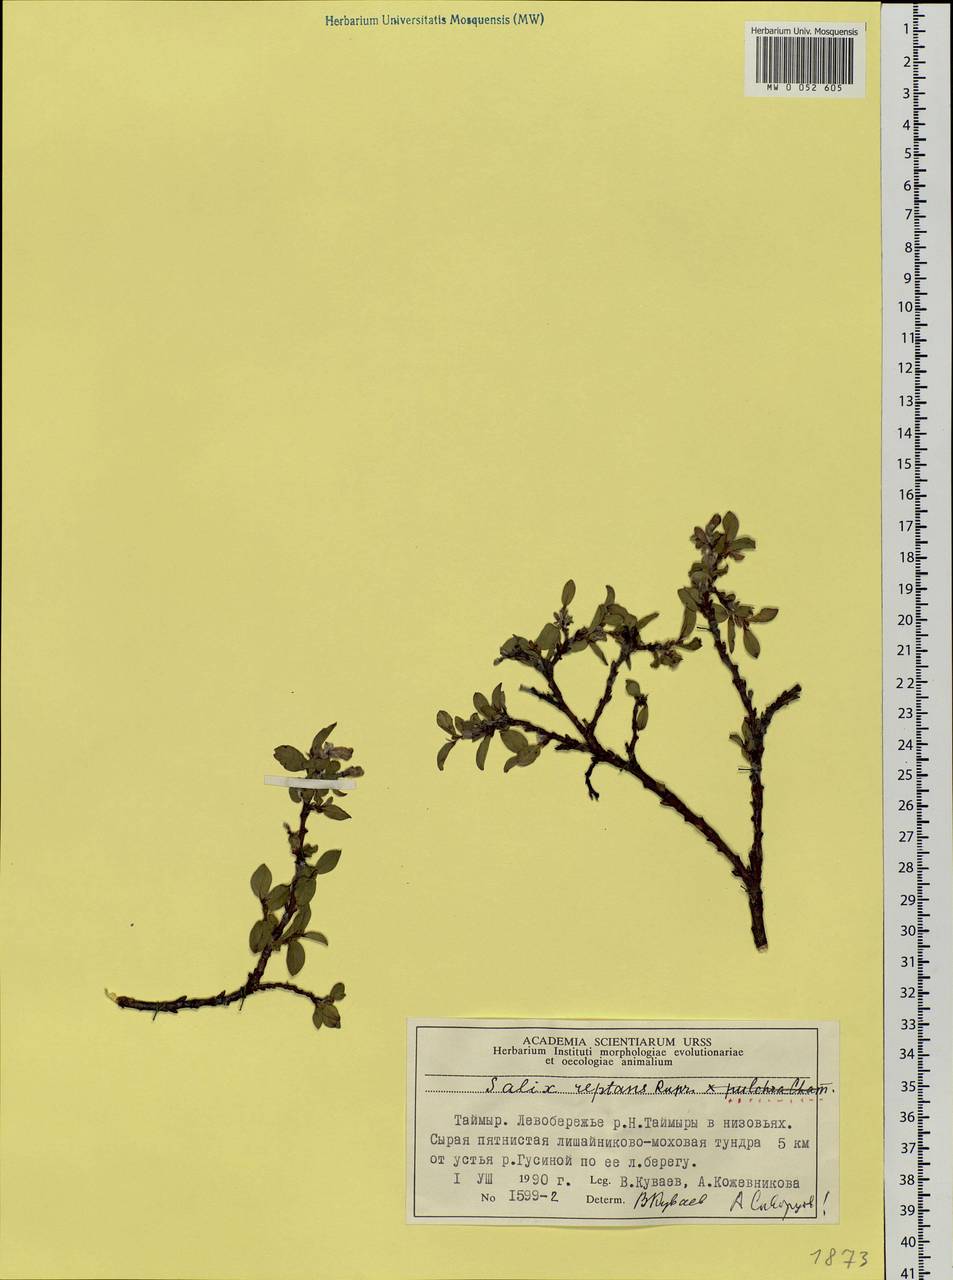 Salix reptans × pulchra, Siberia, Central Siberia (S3) (Russia)